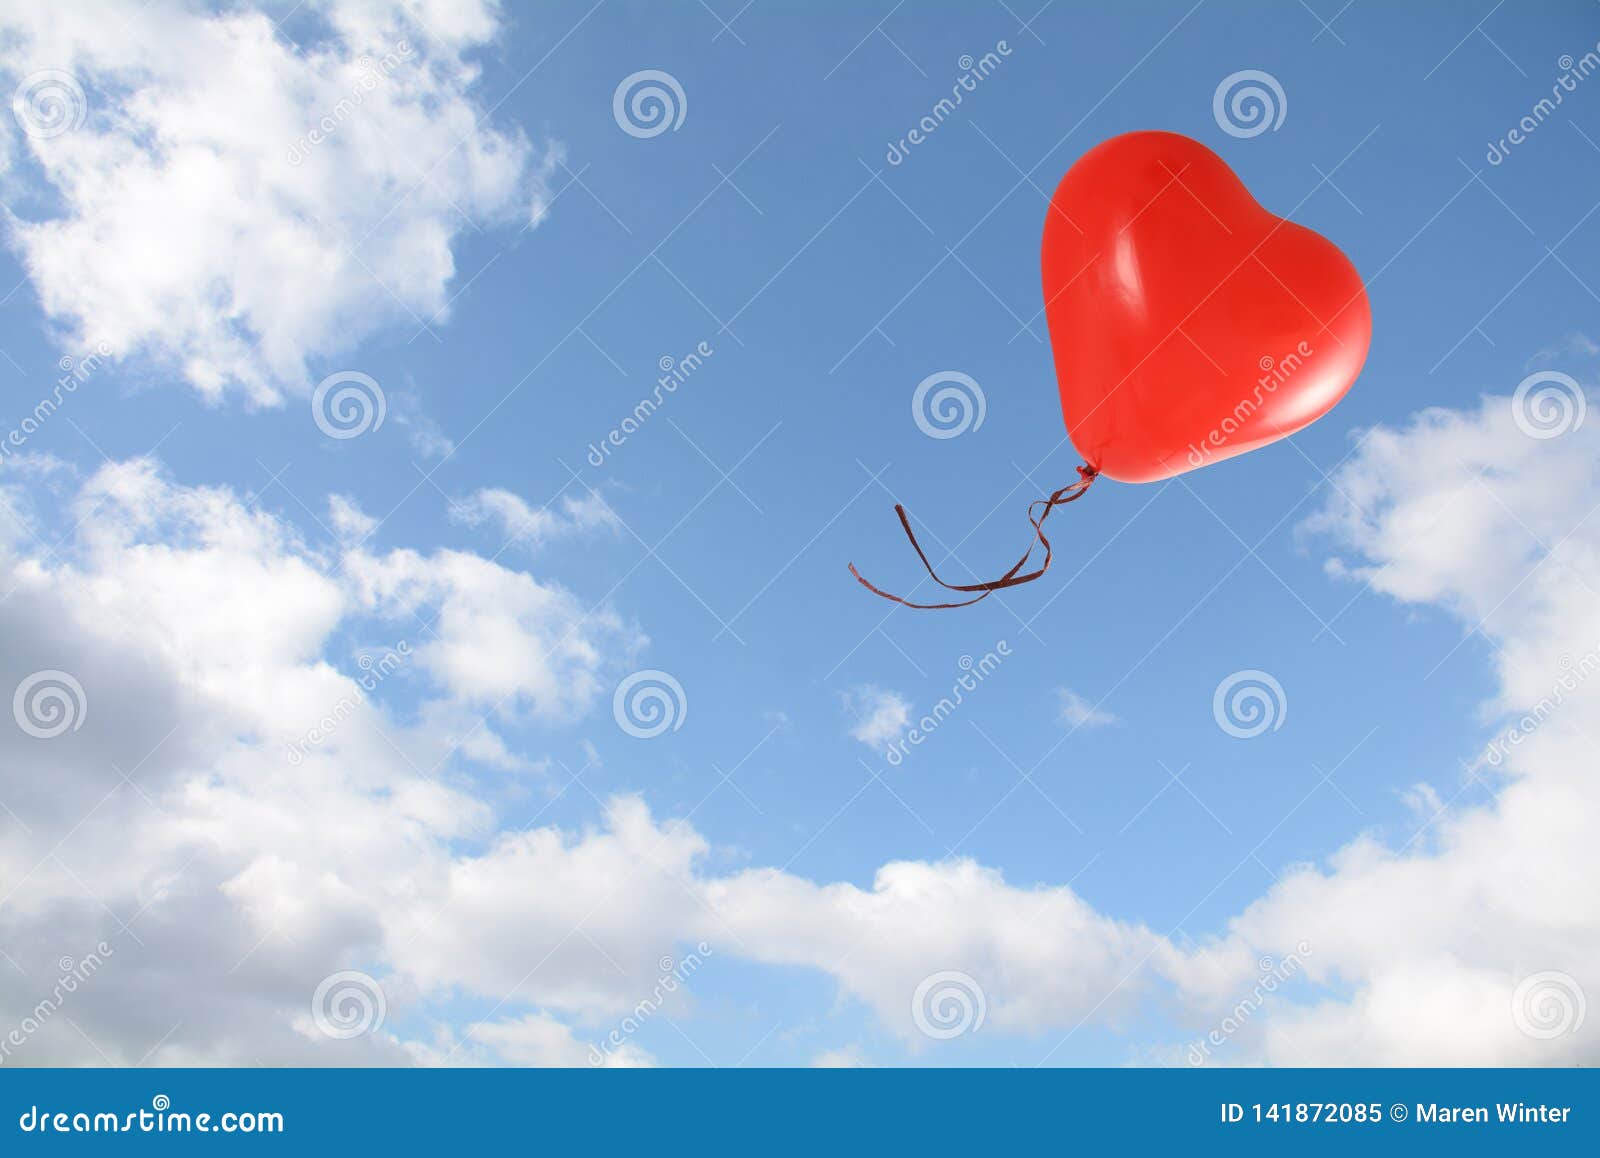 Красный отпускать. Воздушный шарик сердце в небе. Красный воздушный шарик улетает в небо. Воздушные шары сердечки в небе. Шарики в небе.